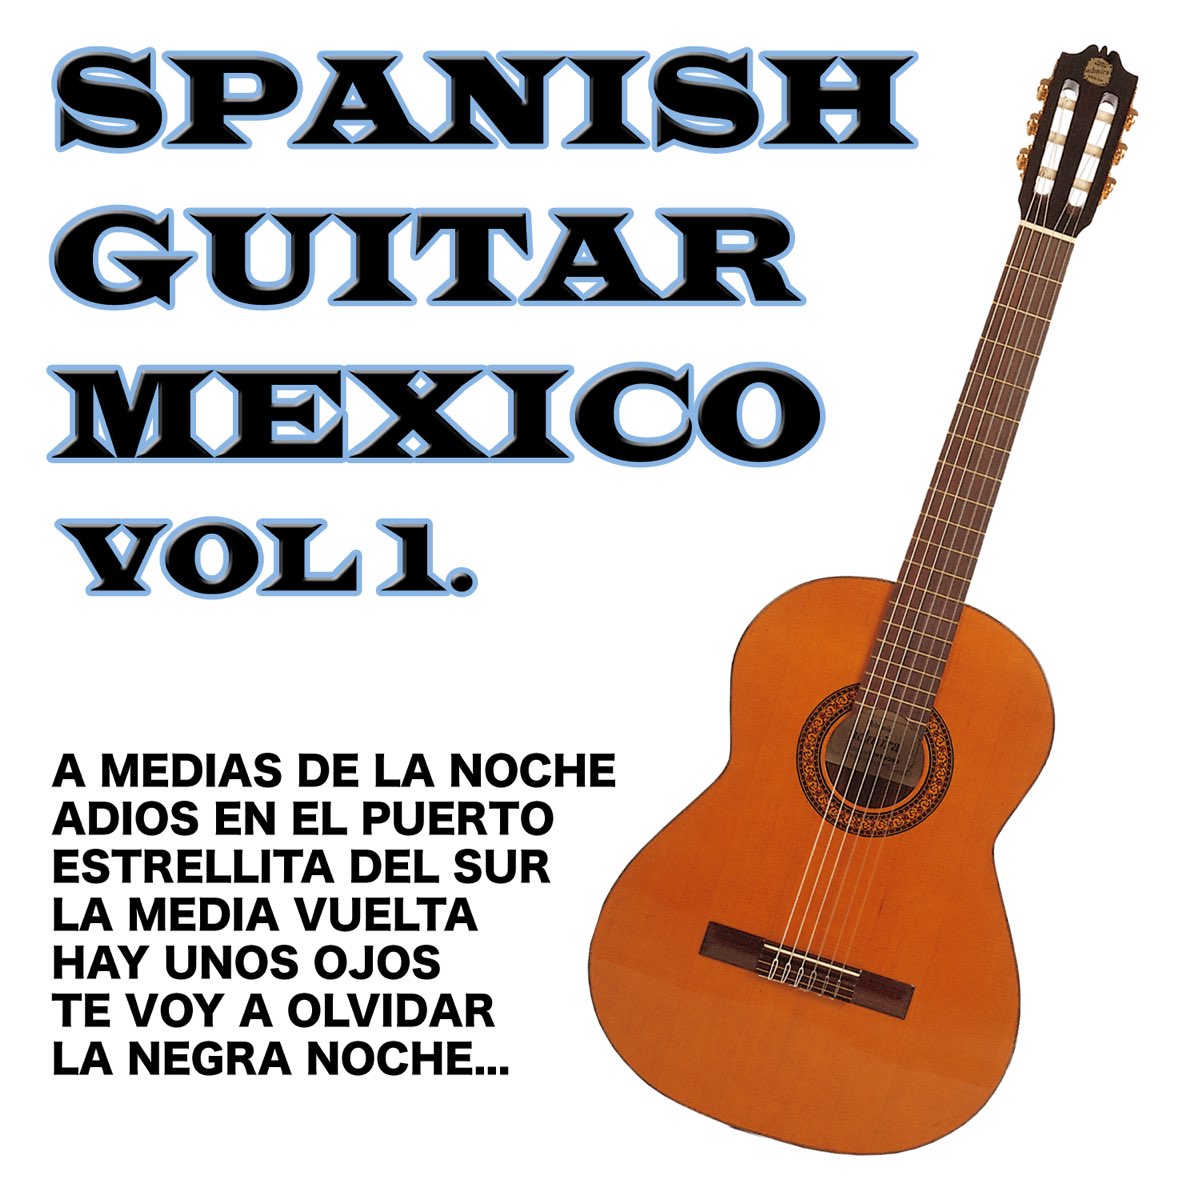 Spanish Guitar Mexico Vol.1 - Album by Antonio de Lucena - Apple Music